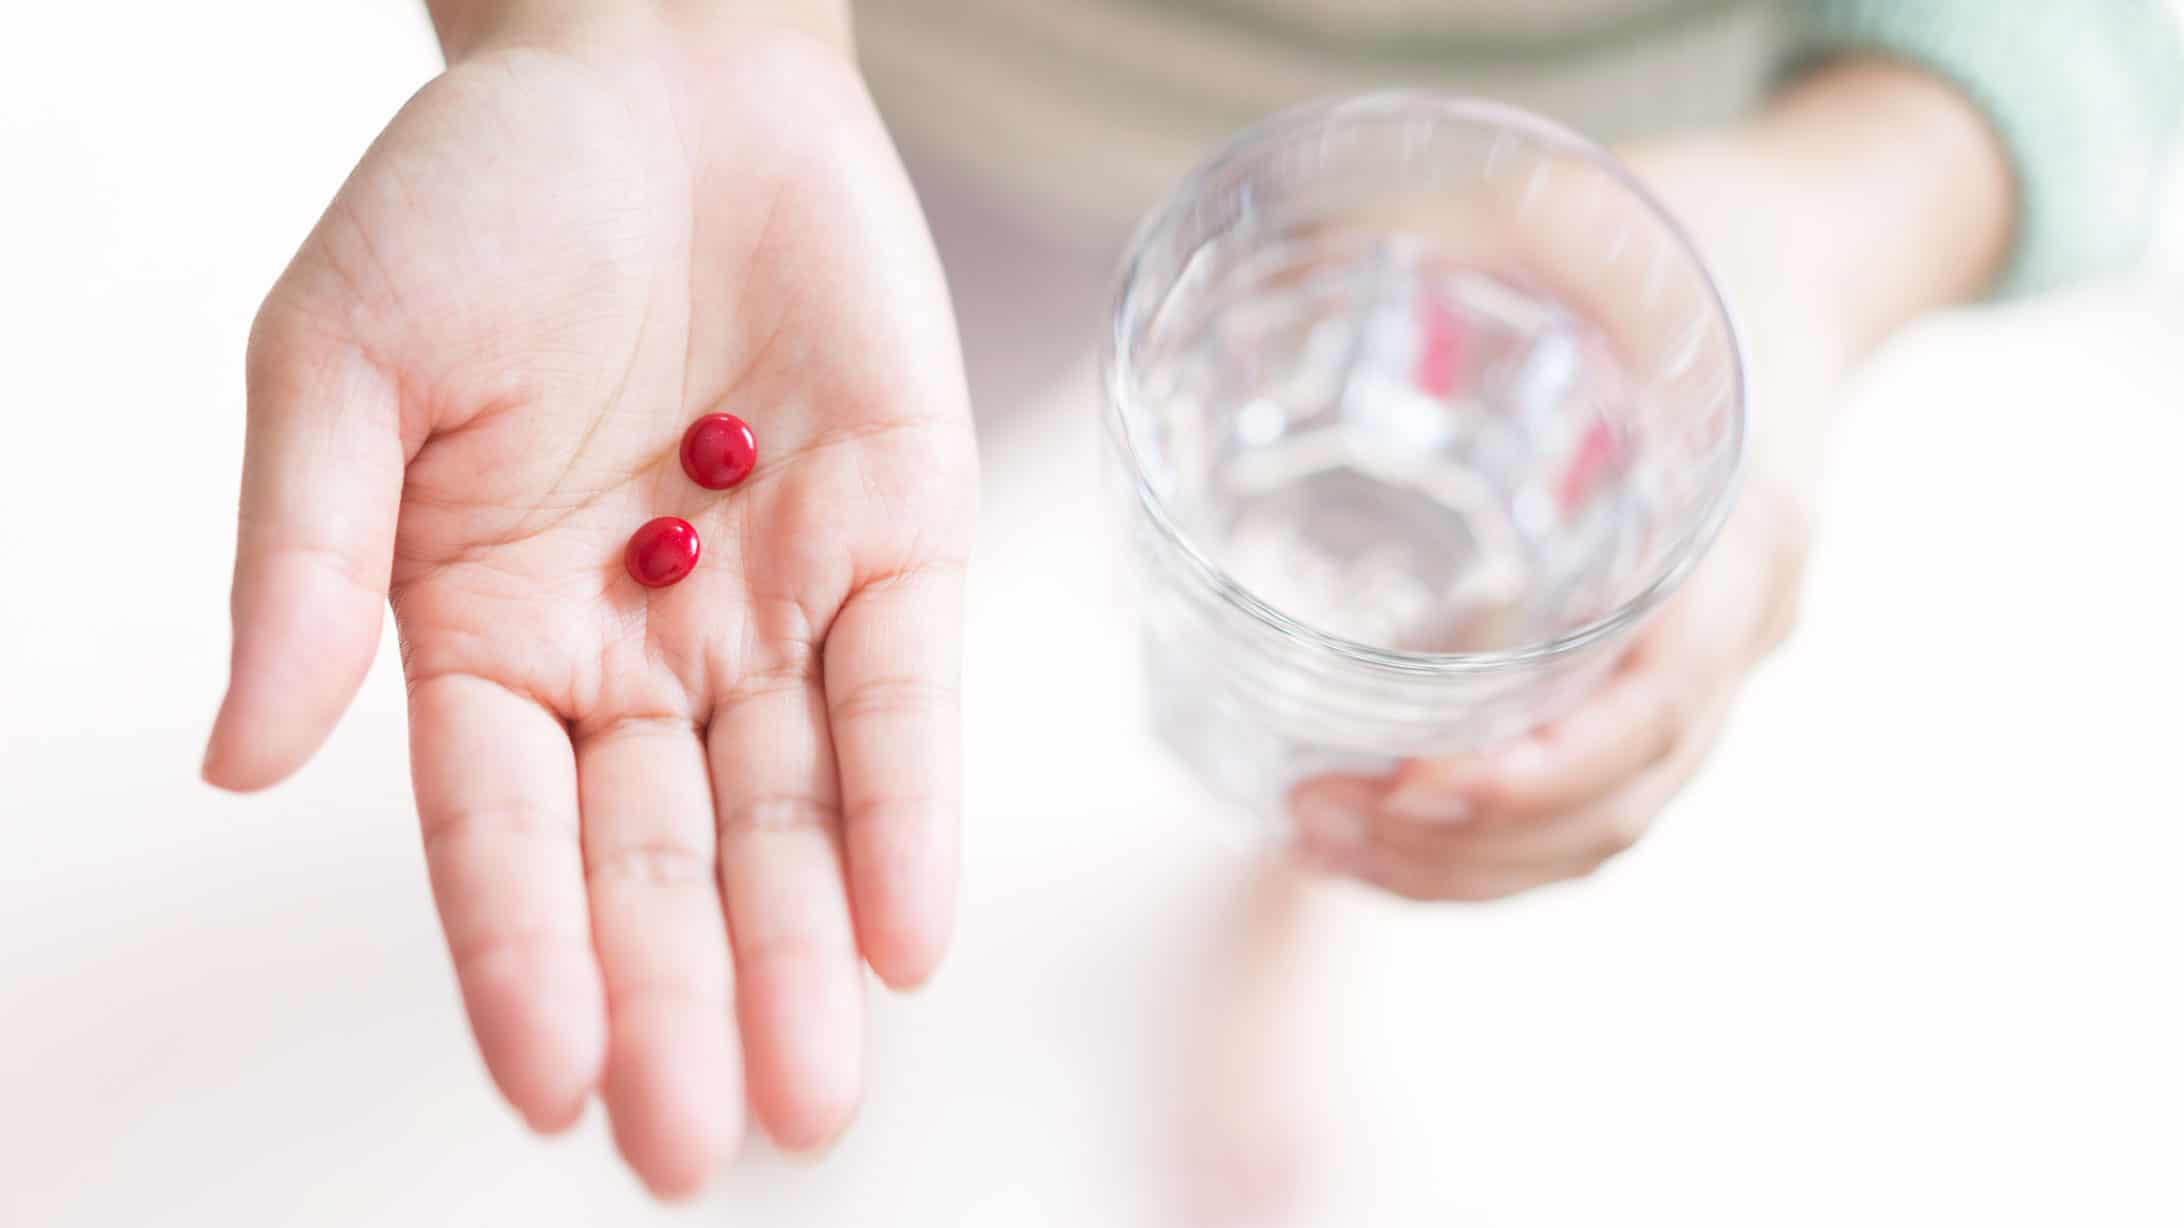 zwei rote Pillen in der Hand einer Frau. Glas Wasser in der anderen Hand